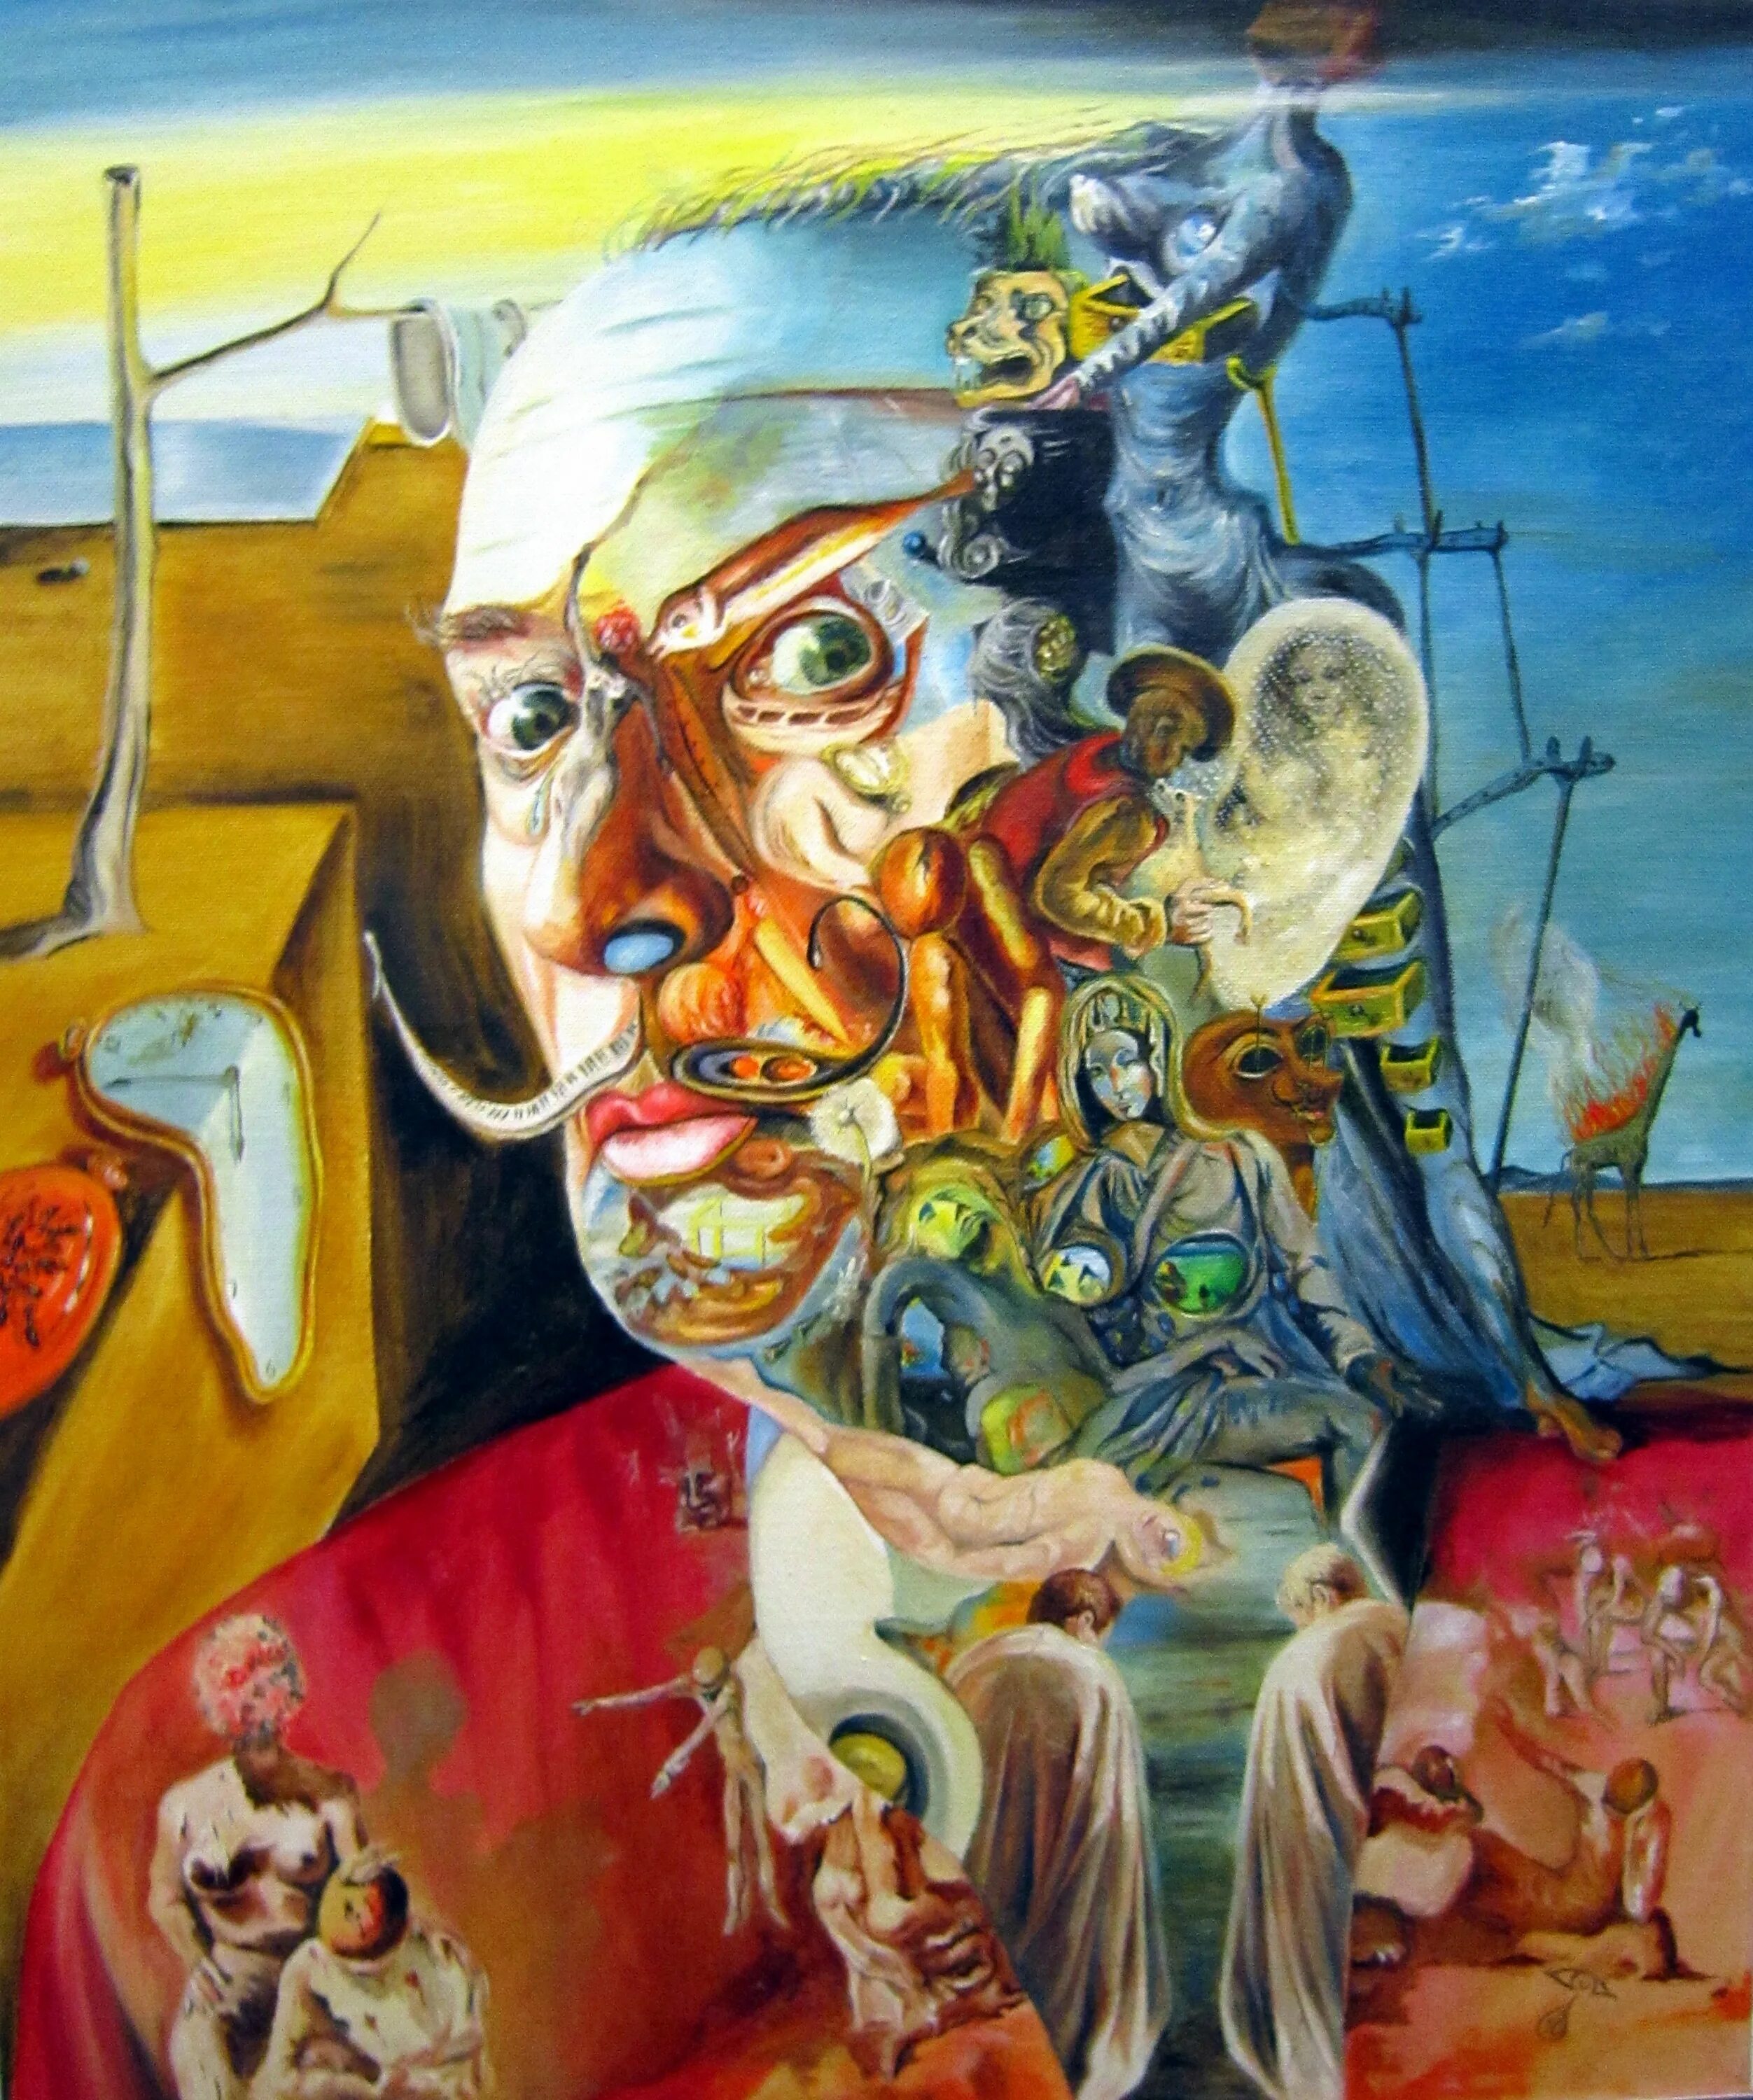 Известные произведения дали. Сальвадор дали (Salvador Dali) (1904-1989). Salvador Dali картины. Художник сюрреалист Сальвадор дали. Dali Salvador Сальвадор дали картины.